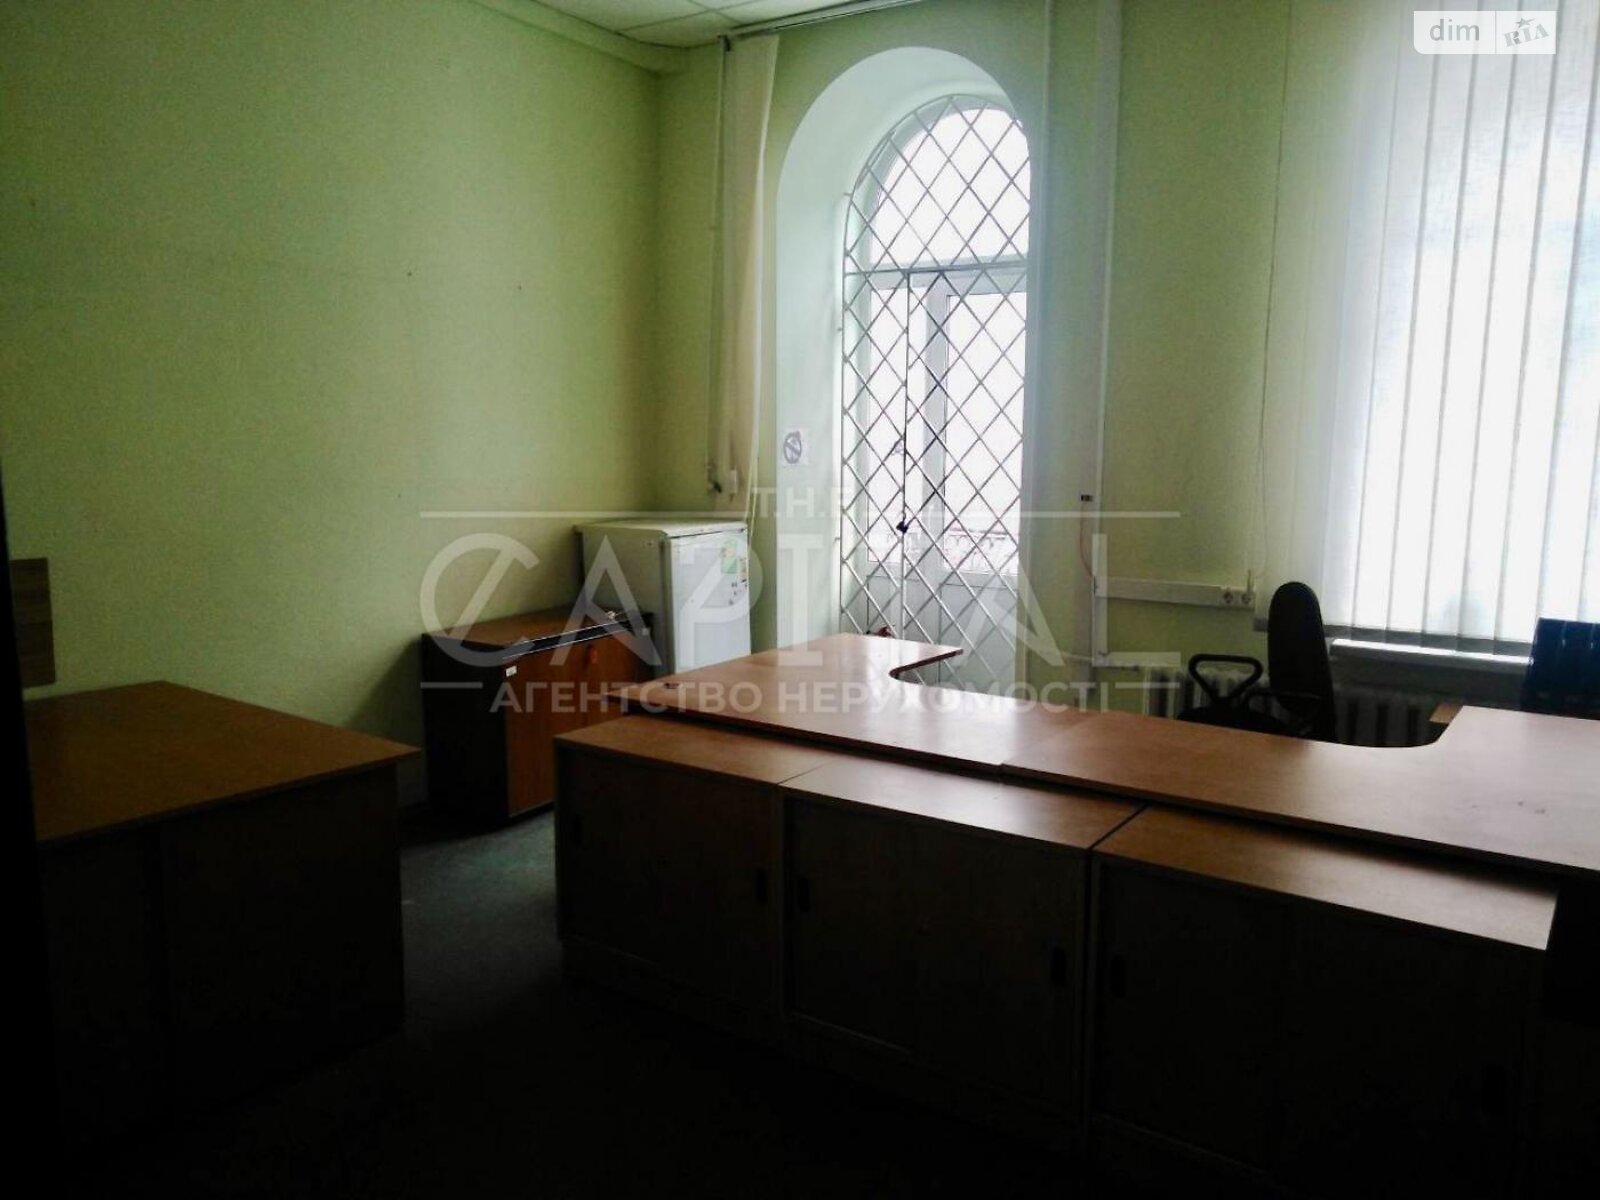 Аренда офисного помещения в Киеве, Софиевская улица 3, помещений - 10, этаж - 2 фото 1